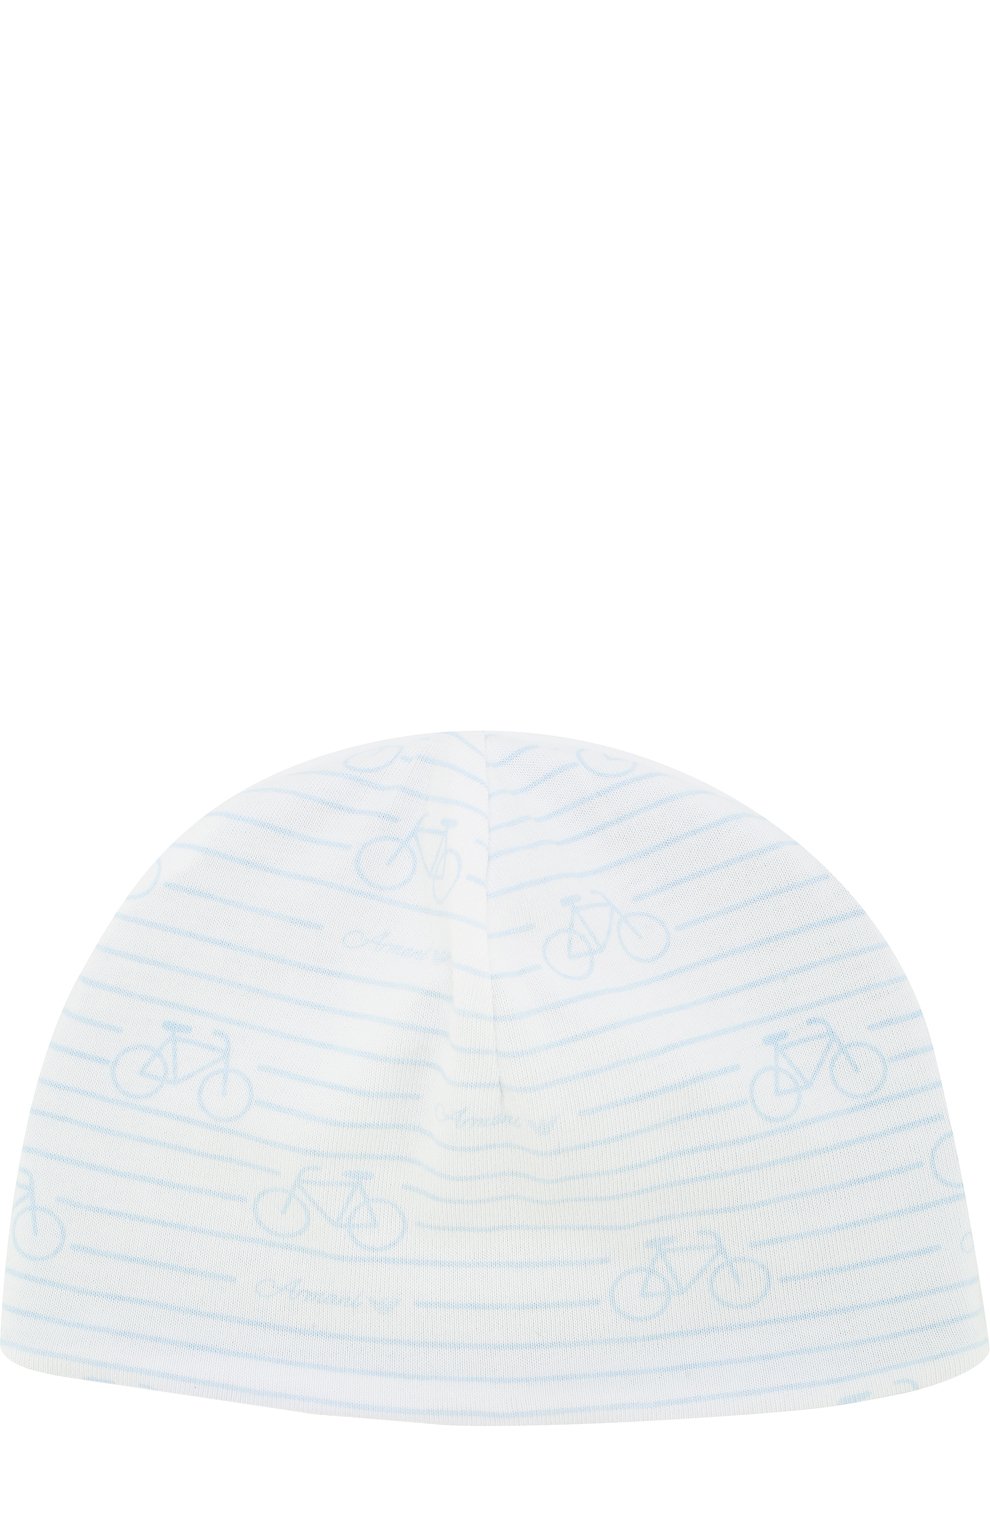 Шапки Armani Junior, Хлопковая шапка с принтом Armani Junior, Китай (Китайская Народная Республика), Голубой, Хлопок: 100%;, 3044145  - купить